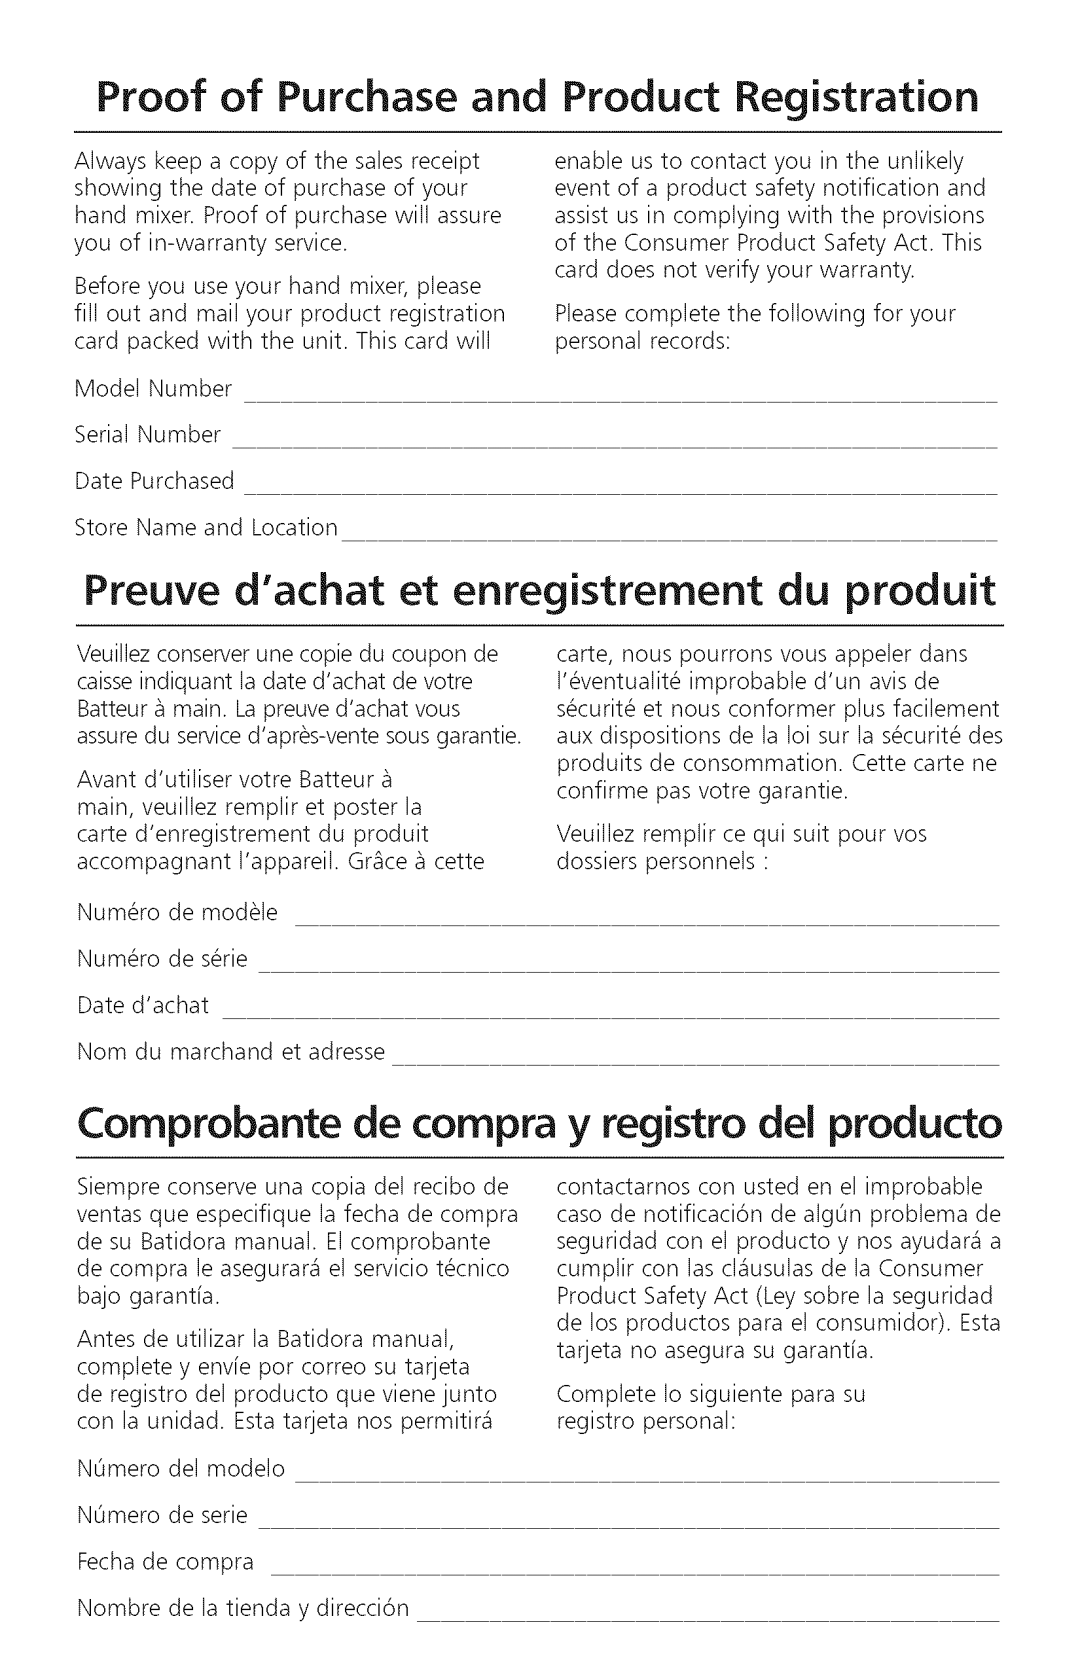 KitchenAid KHM920, KHM720 manual Preuve dachat et enregistrement du produit, Comprobante de compra y registro del producto 